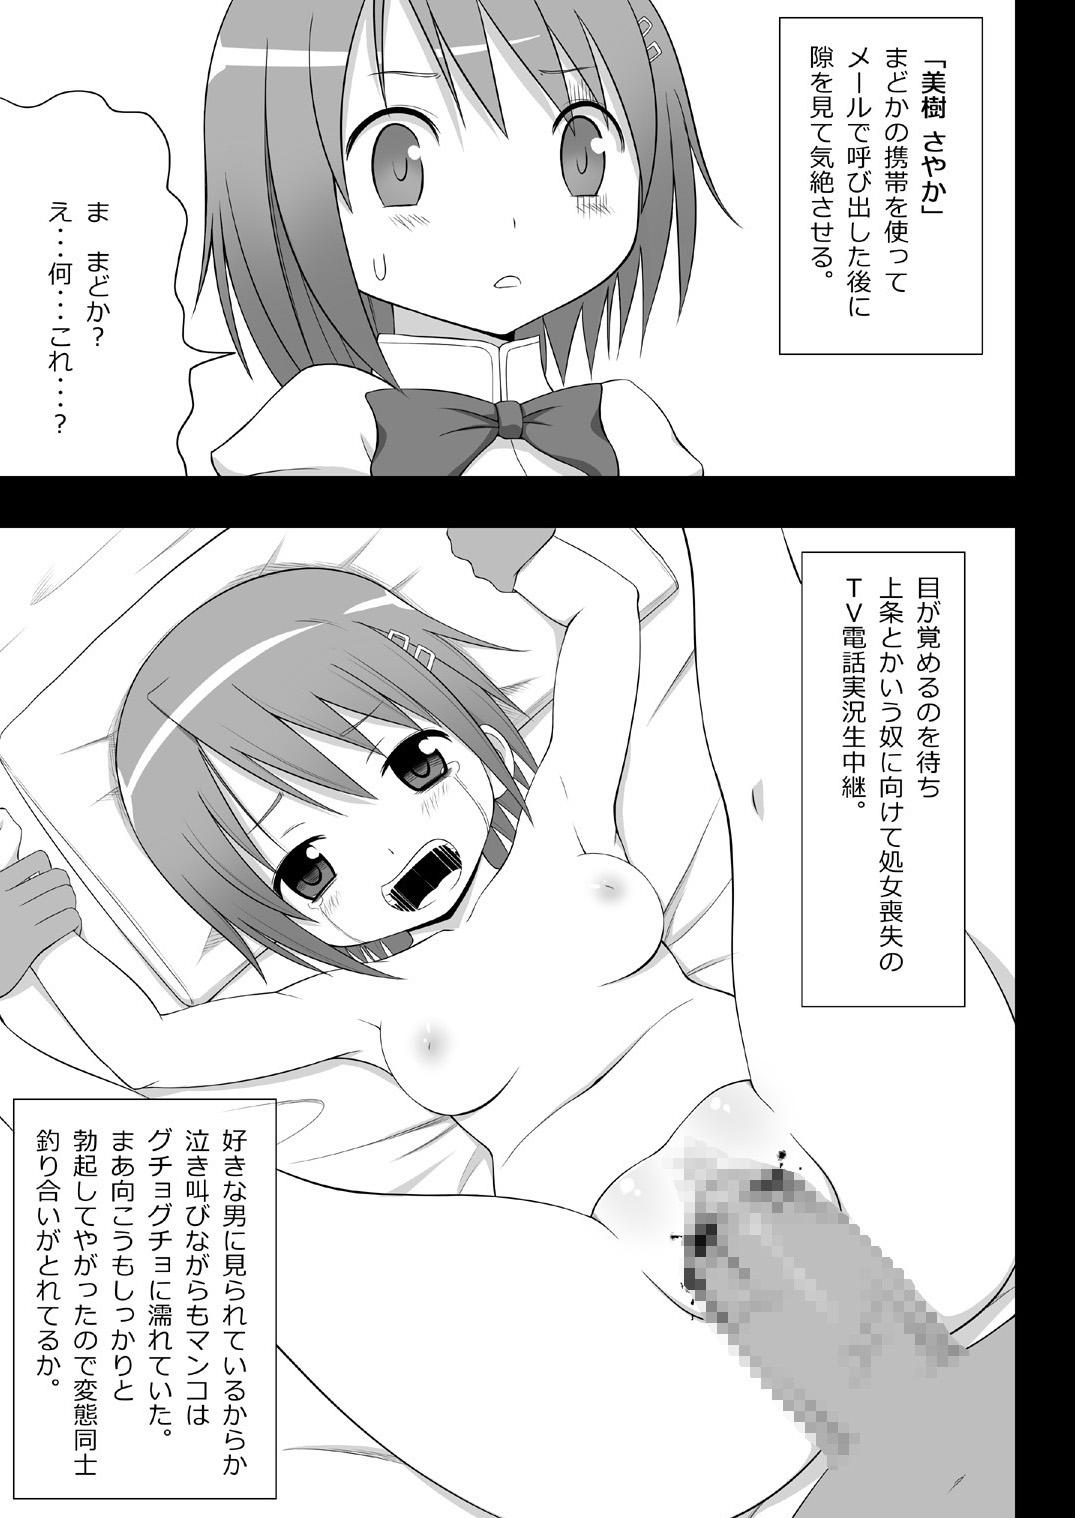 Urine Jitsuroku Rape "Watashitachi ga Shoujo Janaku Natta hi" - Puella magi madoka magica Bisexual - Page 4